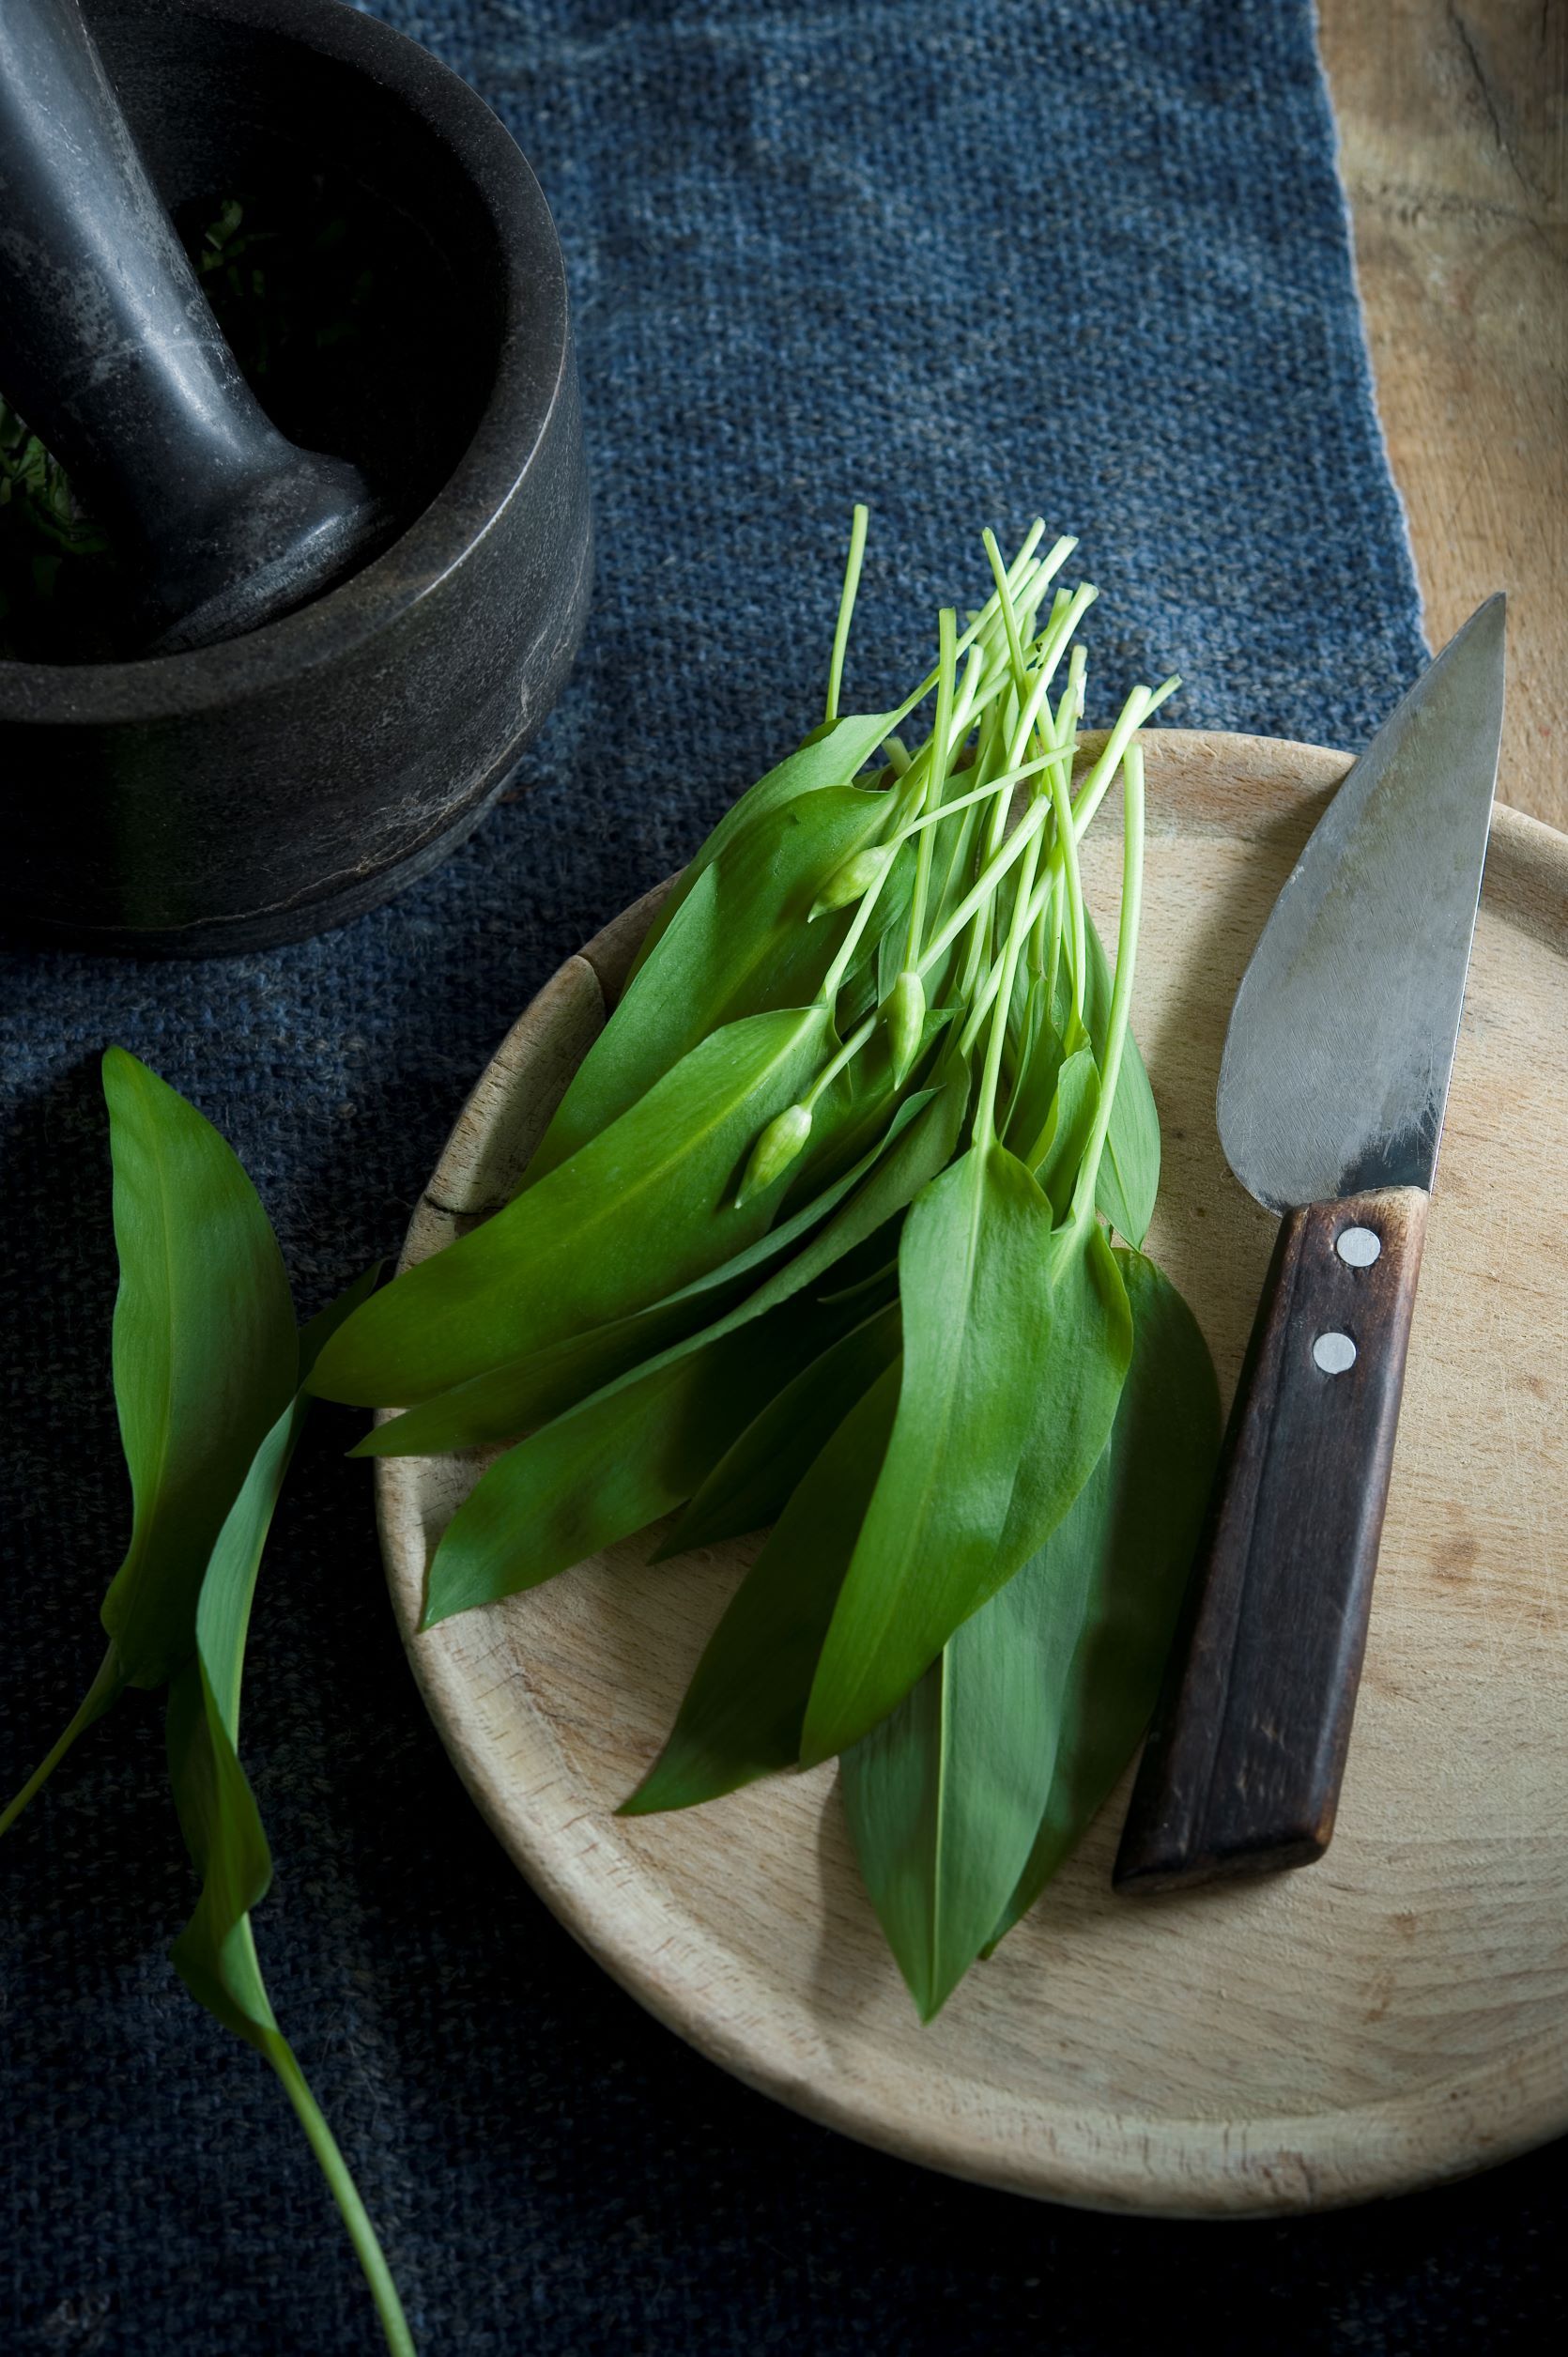 Wild garlic: How to forage for wild garlic & wild garlic recipes